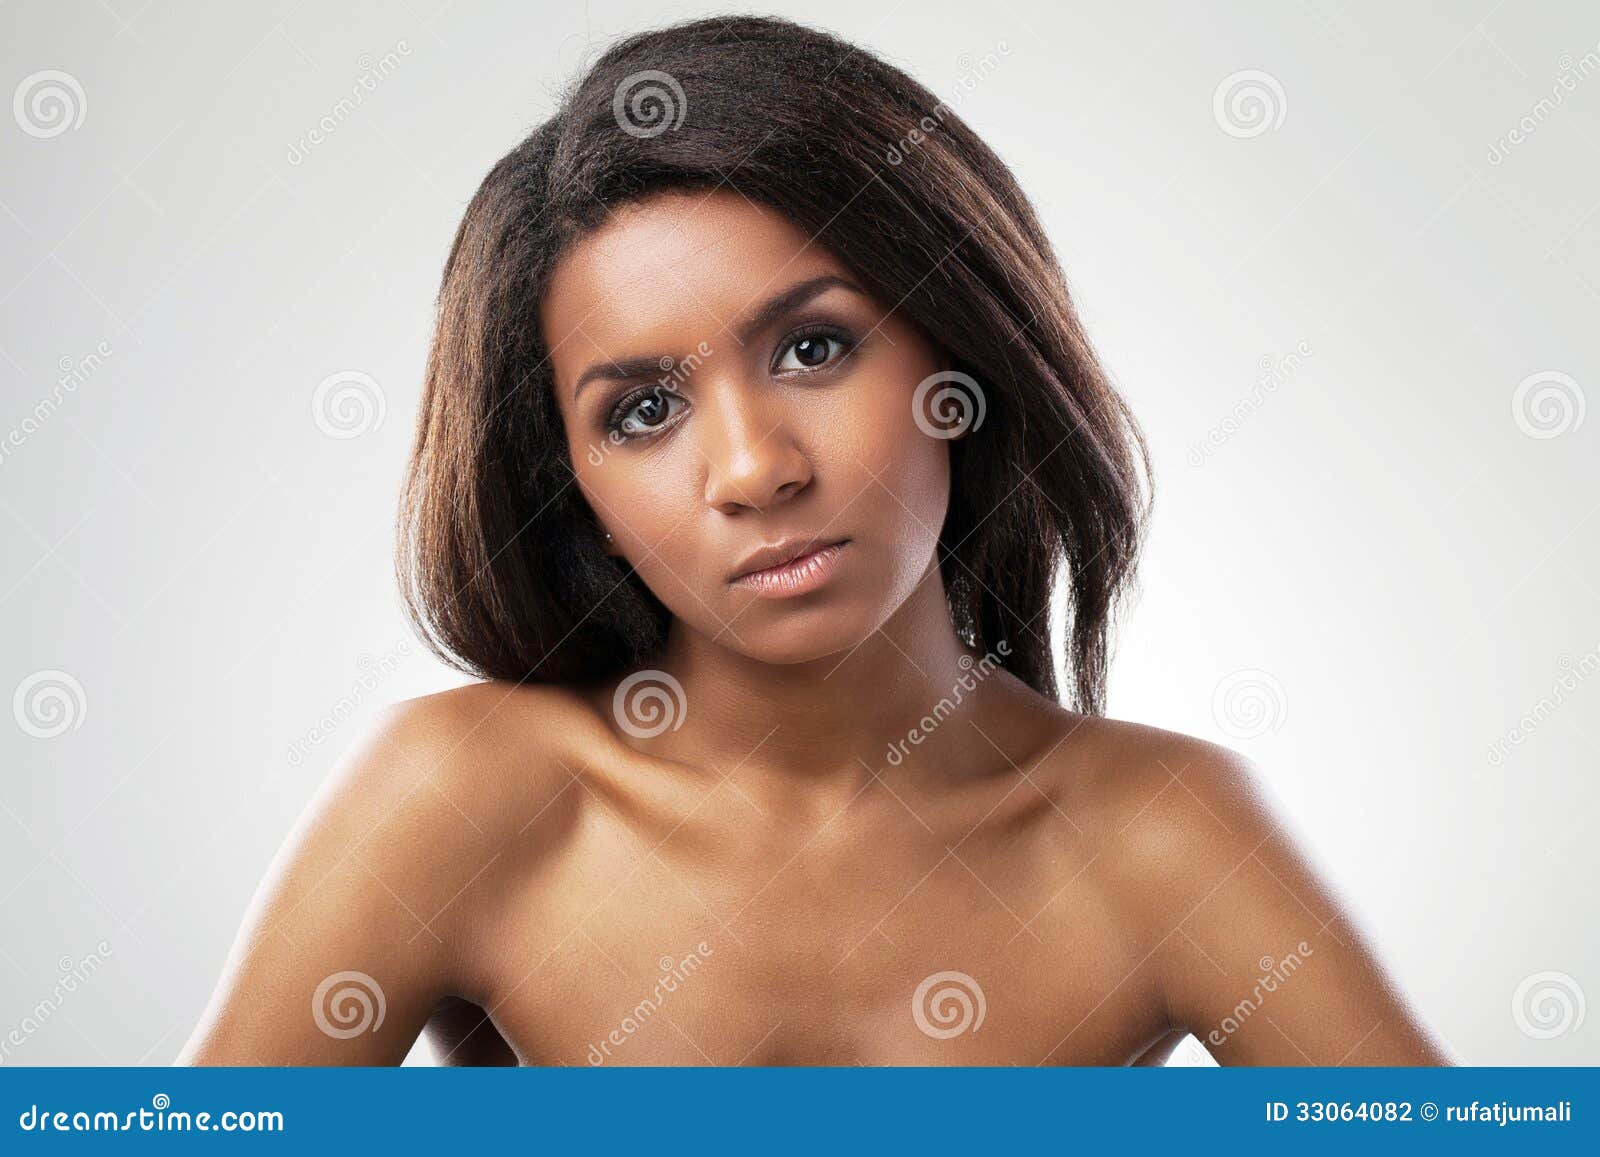 Naked Dark Black Women